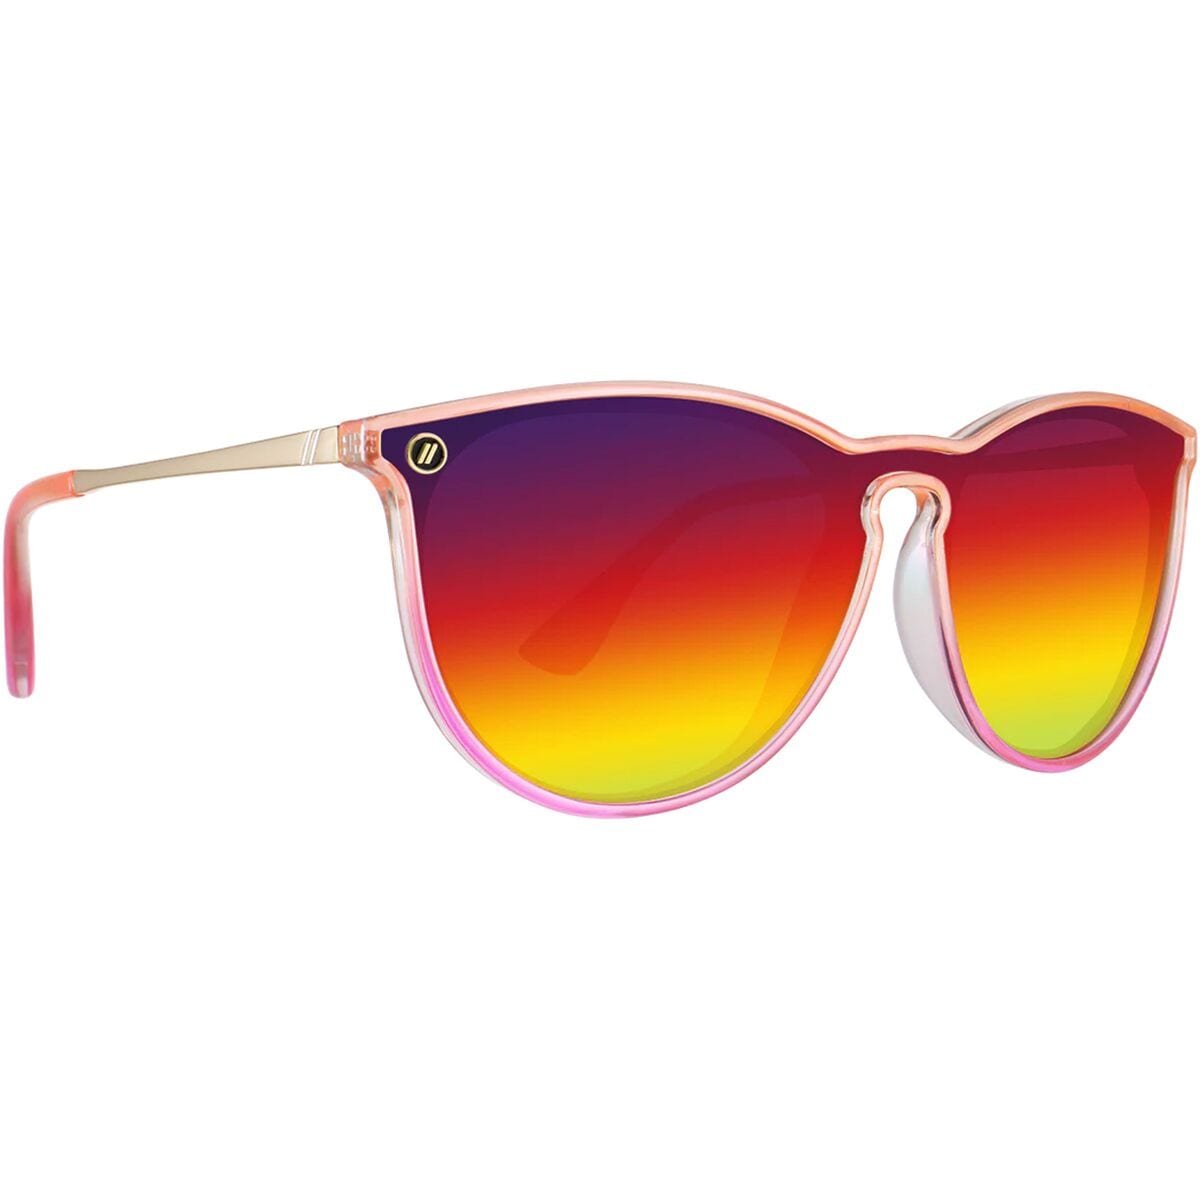 Поляризованные солнцезащитные очки north park x2 Blenders Eyewear, цвет epic dreamer (pol)